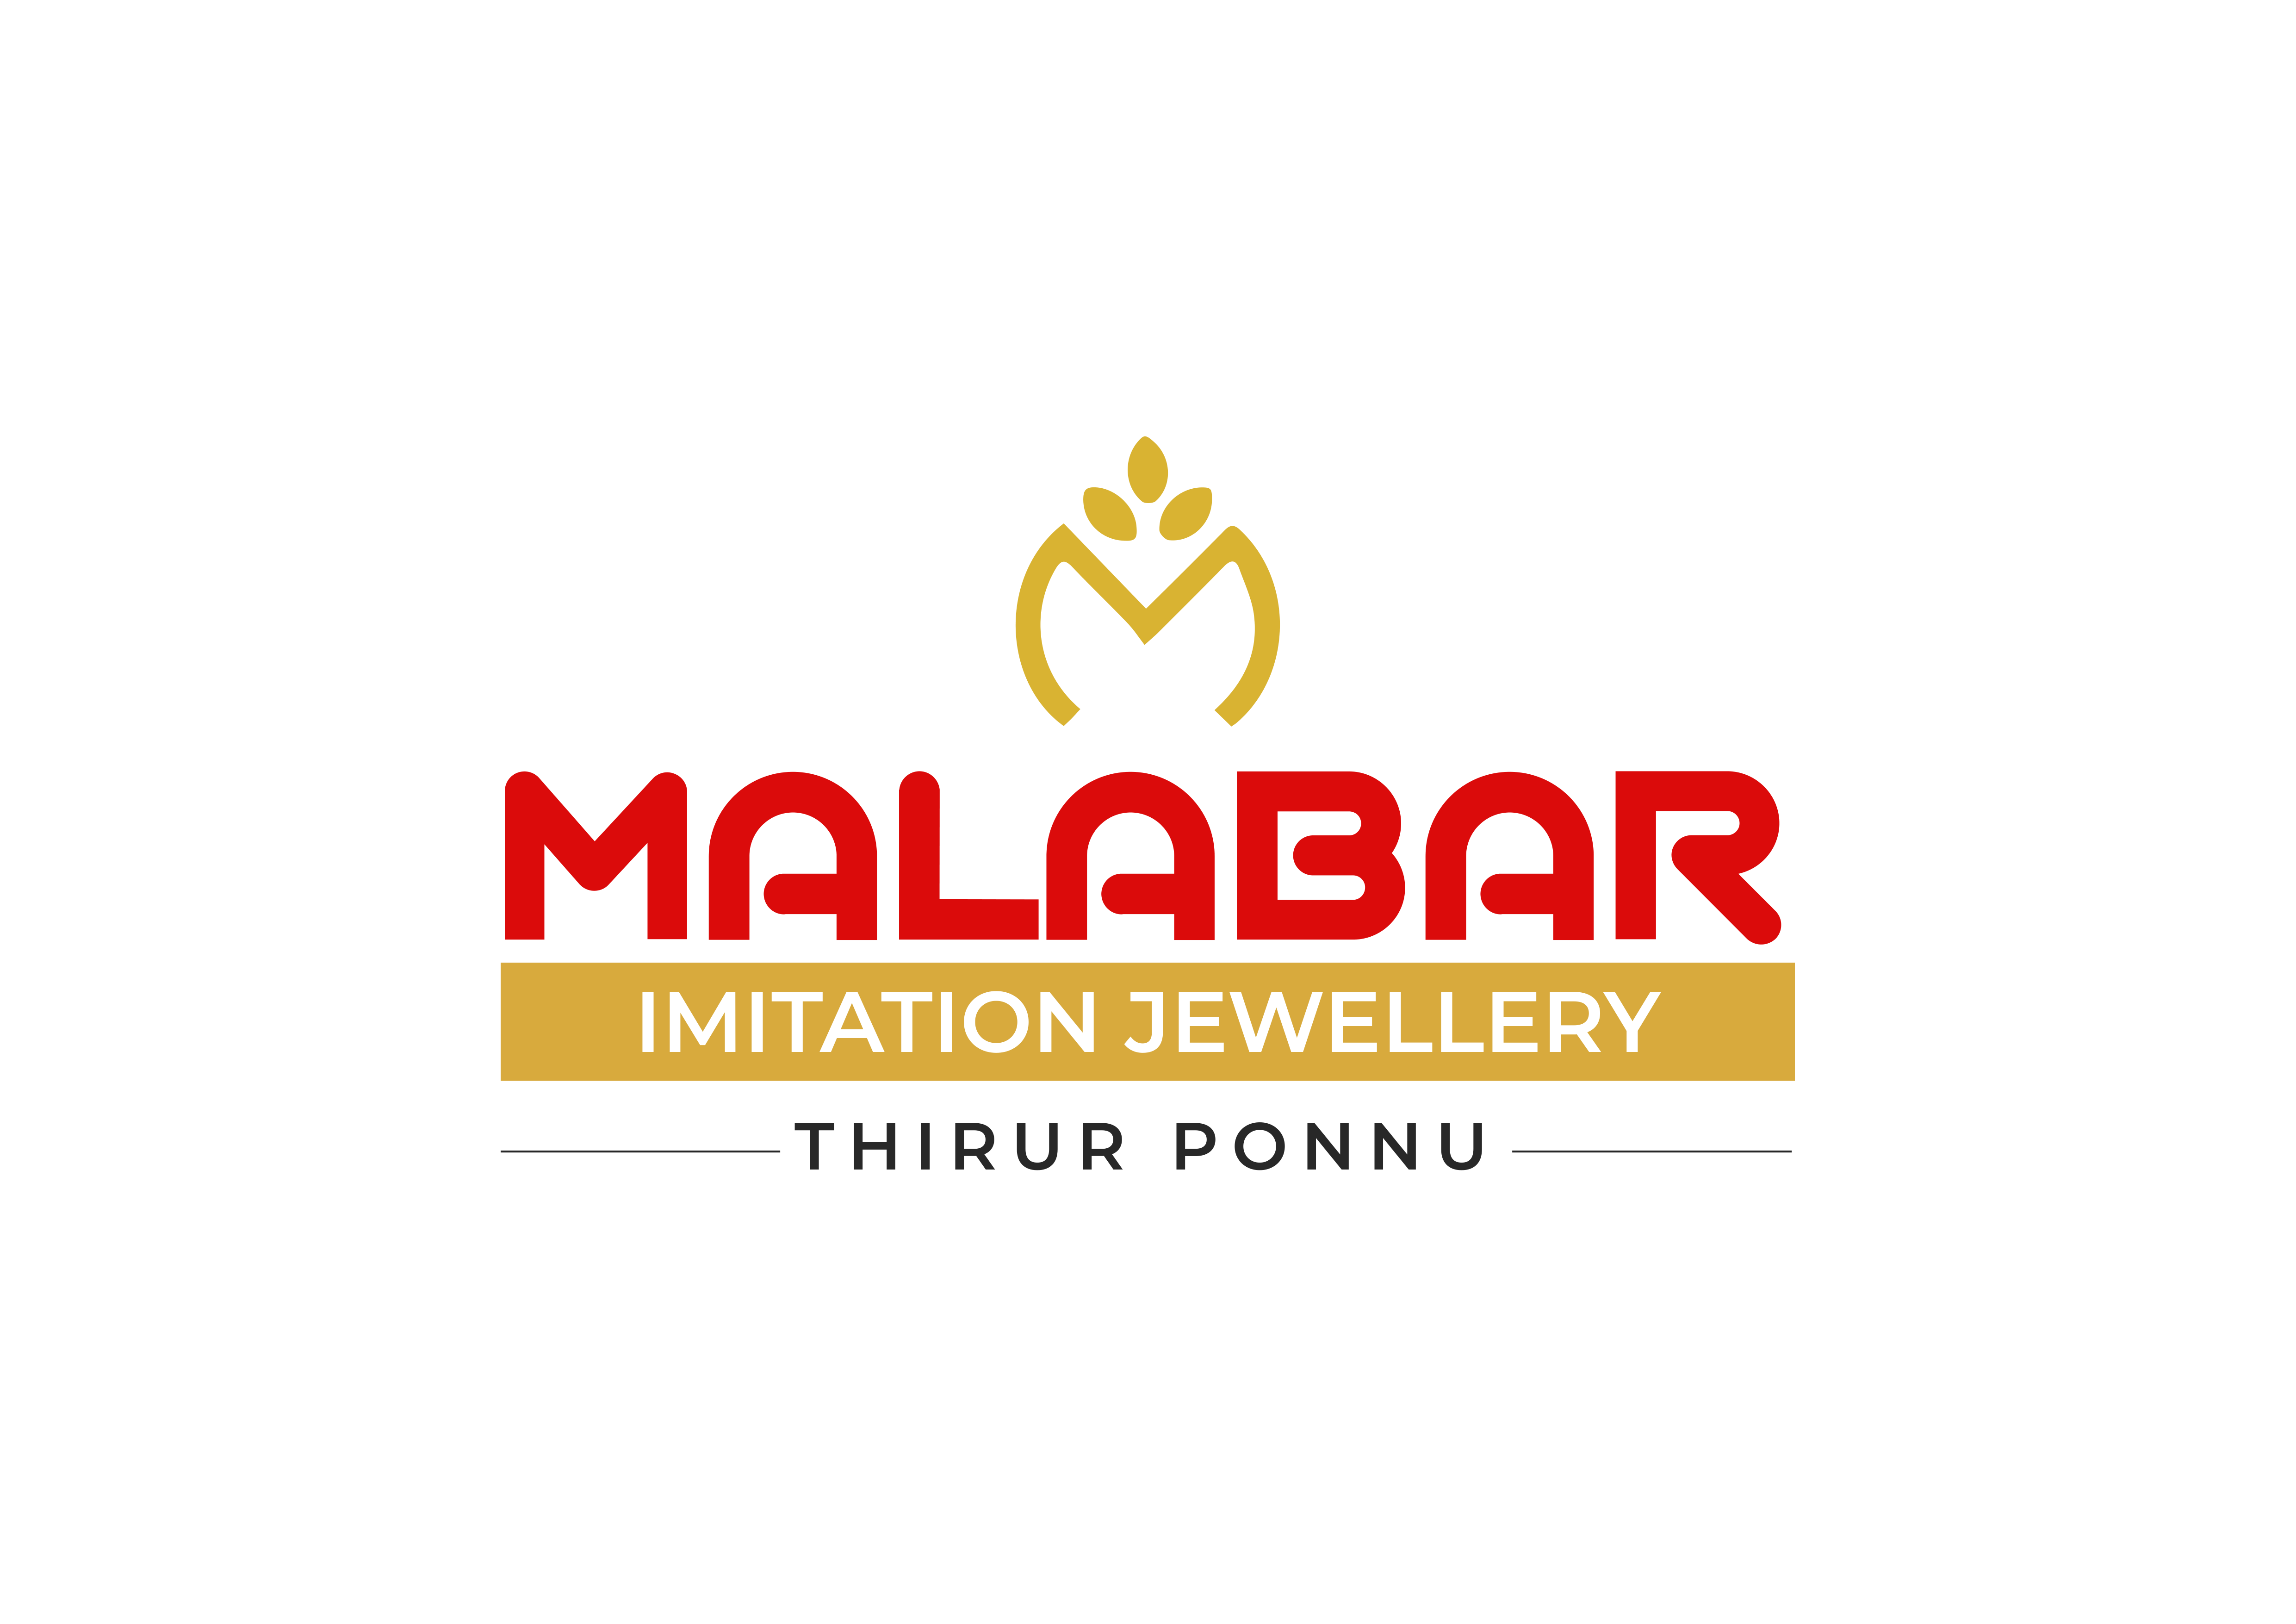 Malabar Thirur Ponnu